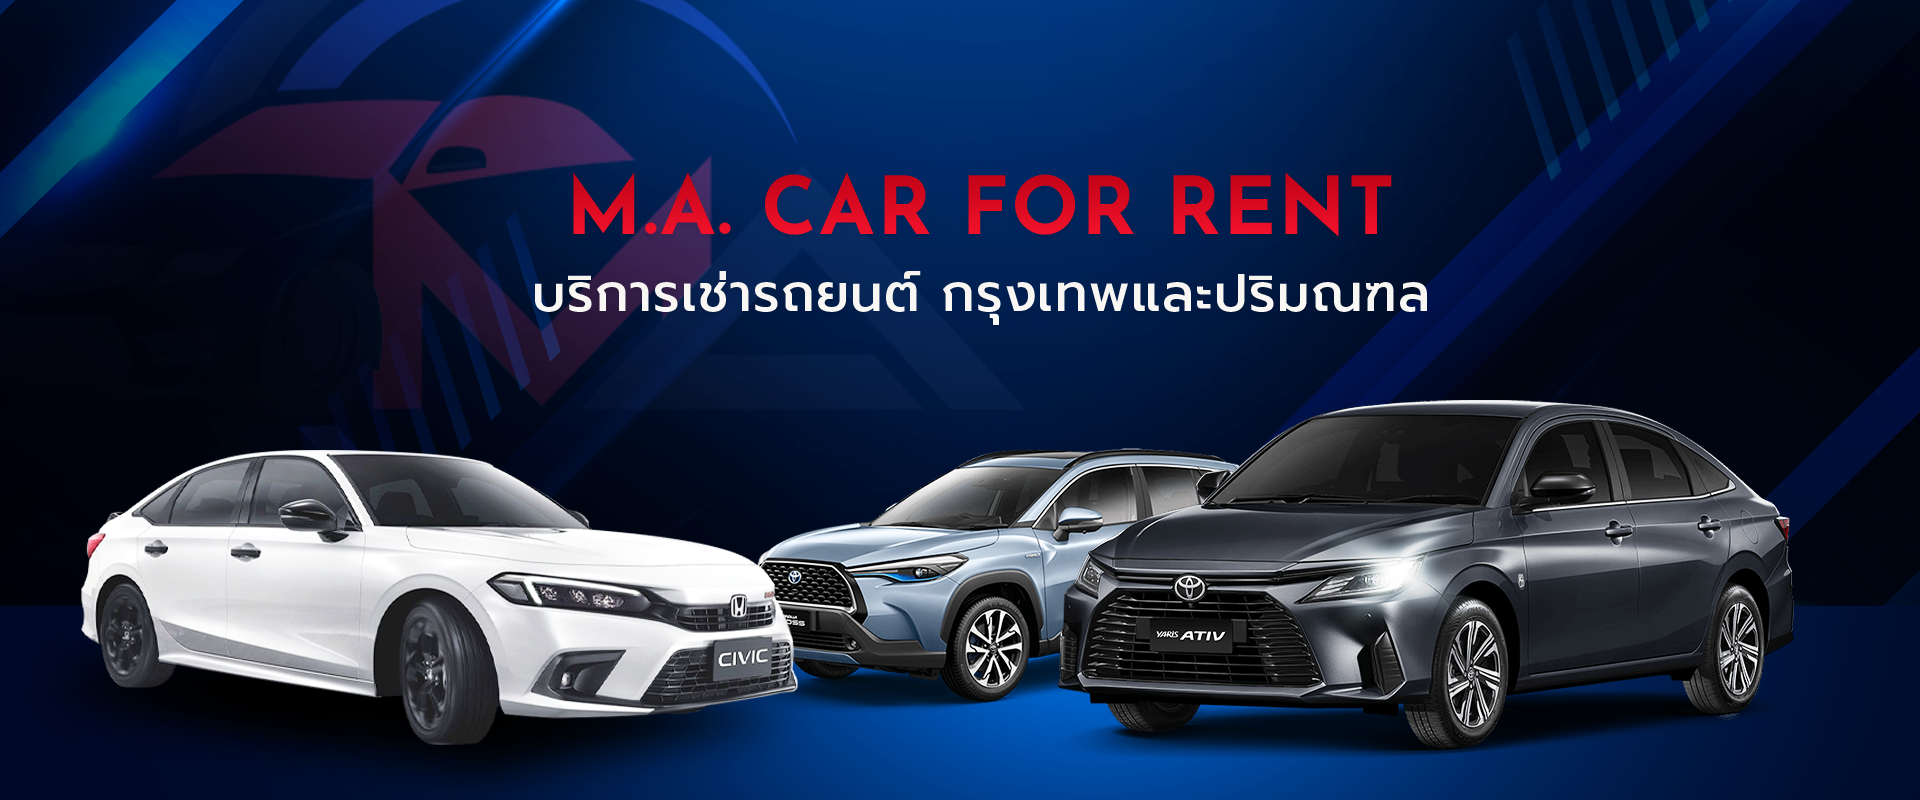 M.A. CAR FOR RENT บริการเช่ารถยนต์ กรุงเทพและปริมณฑล